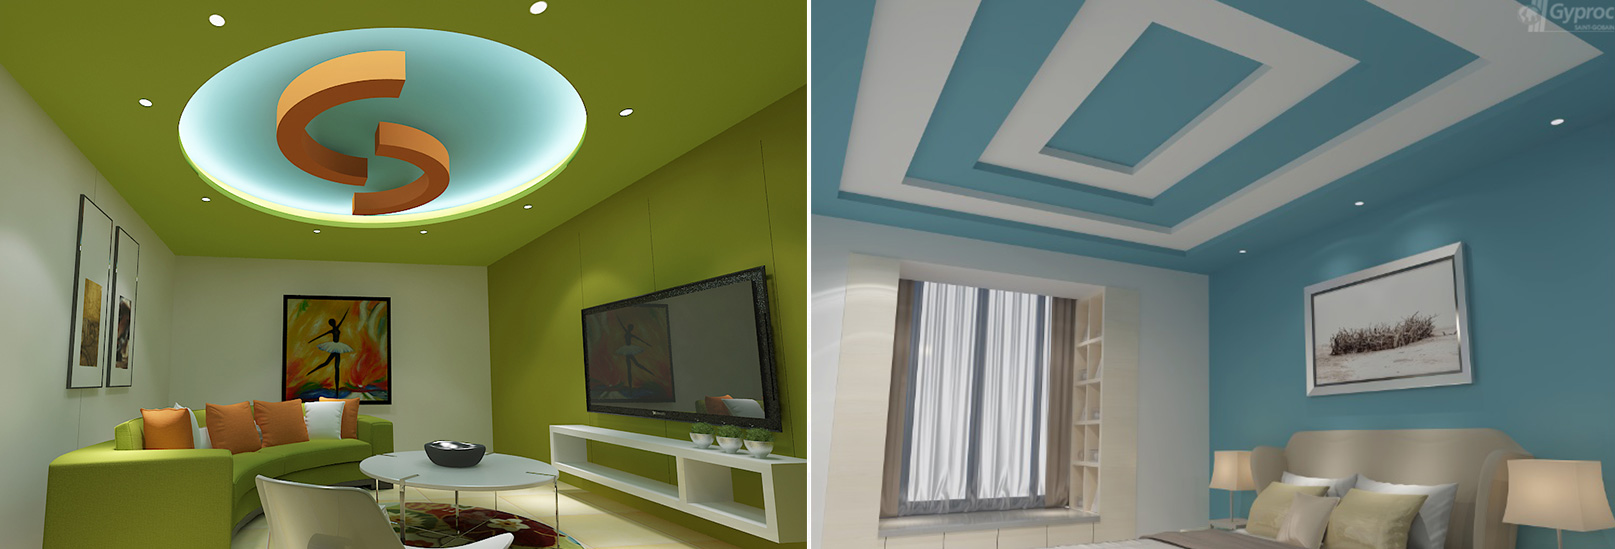 Modern False Ceiling Design For Living Room